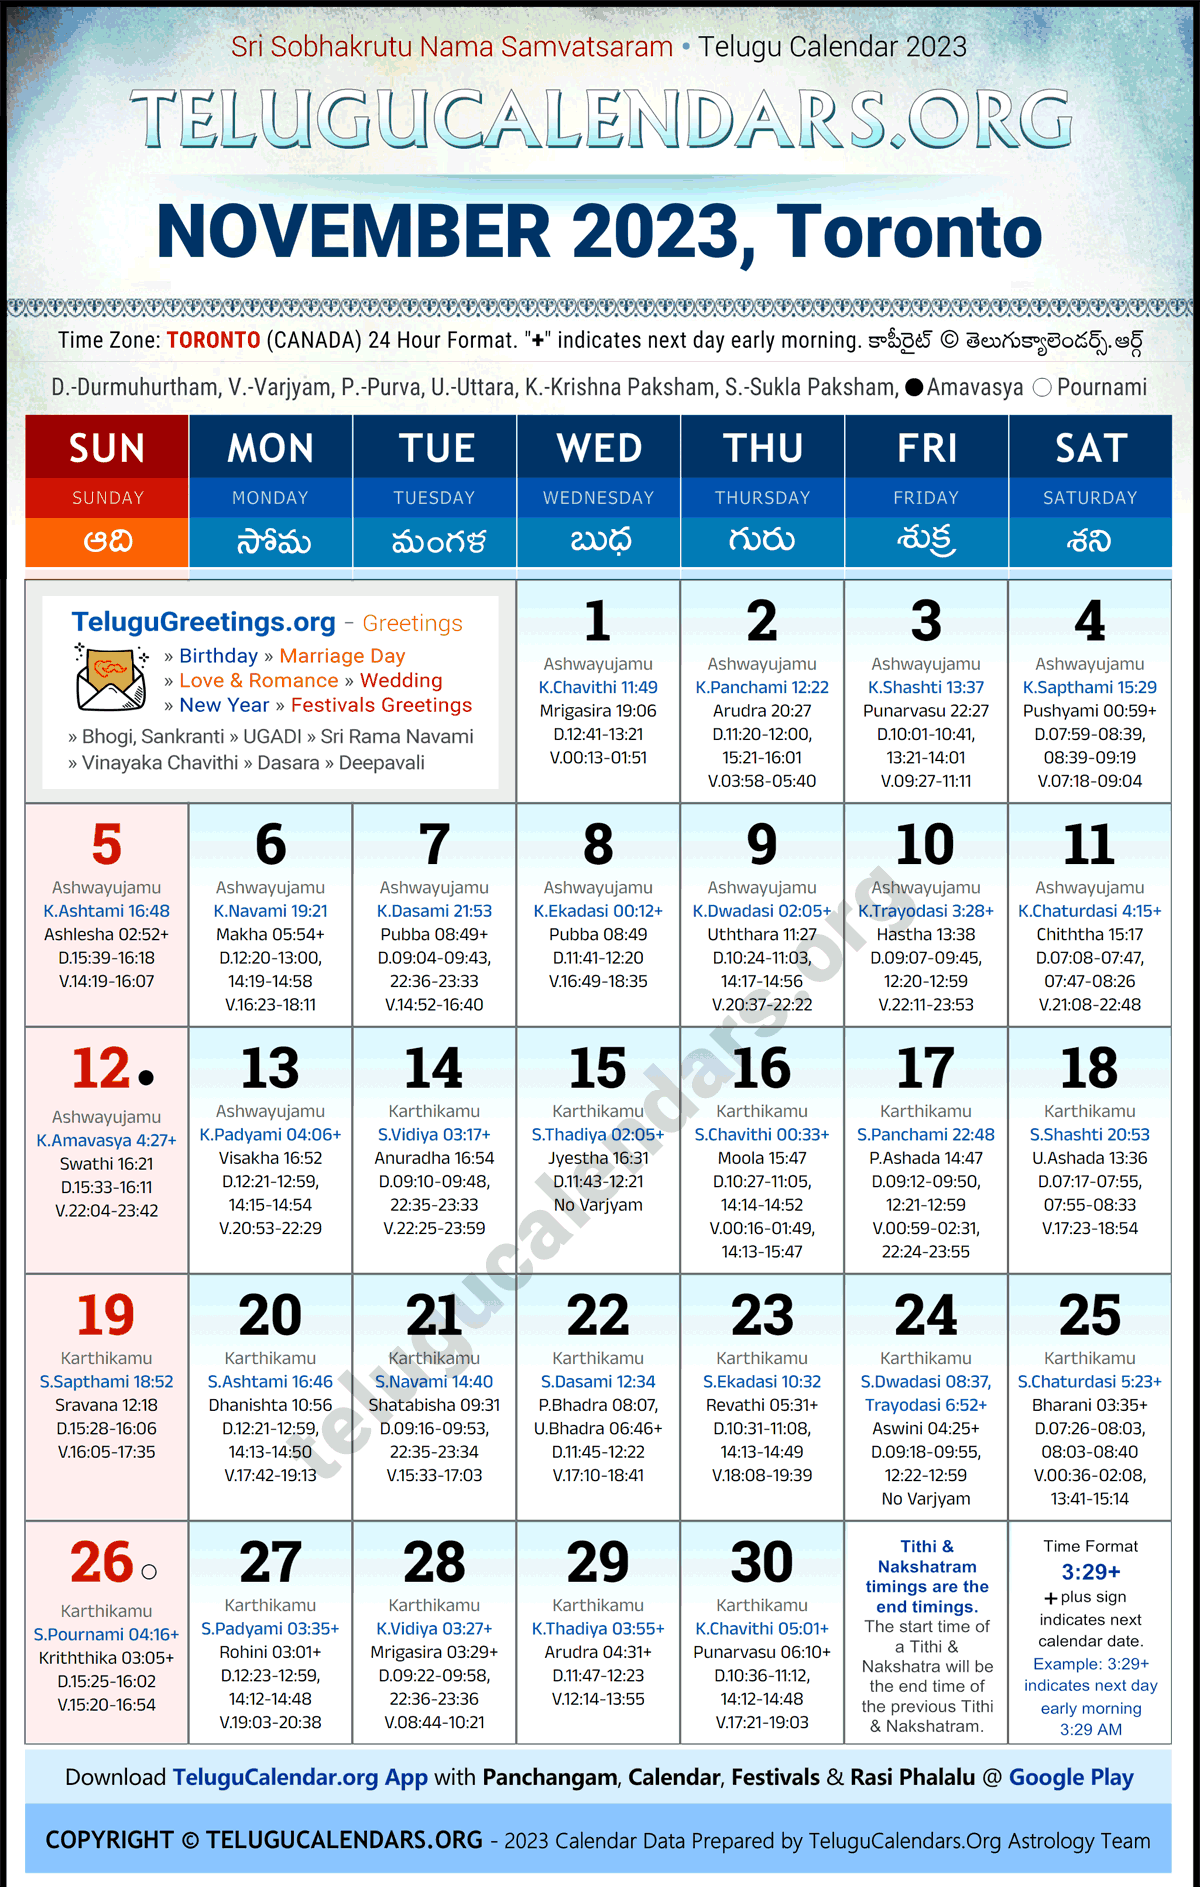 Telugu Calendar 2023 November Festivals for Toronto